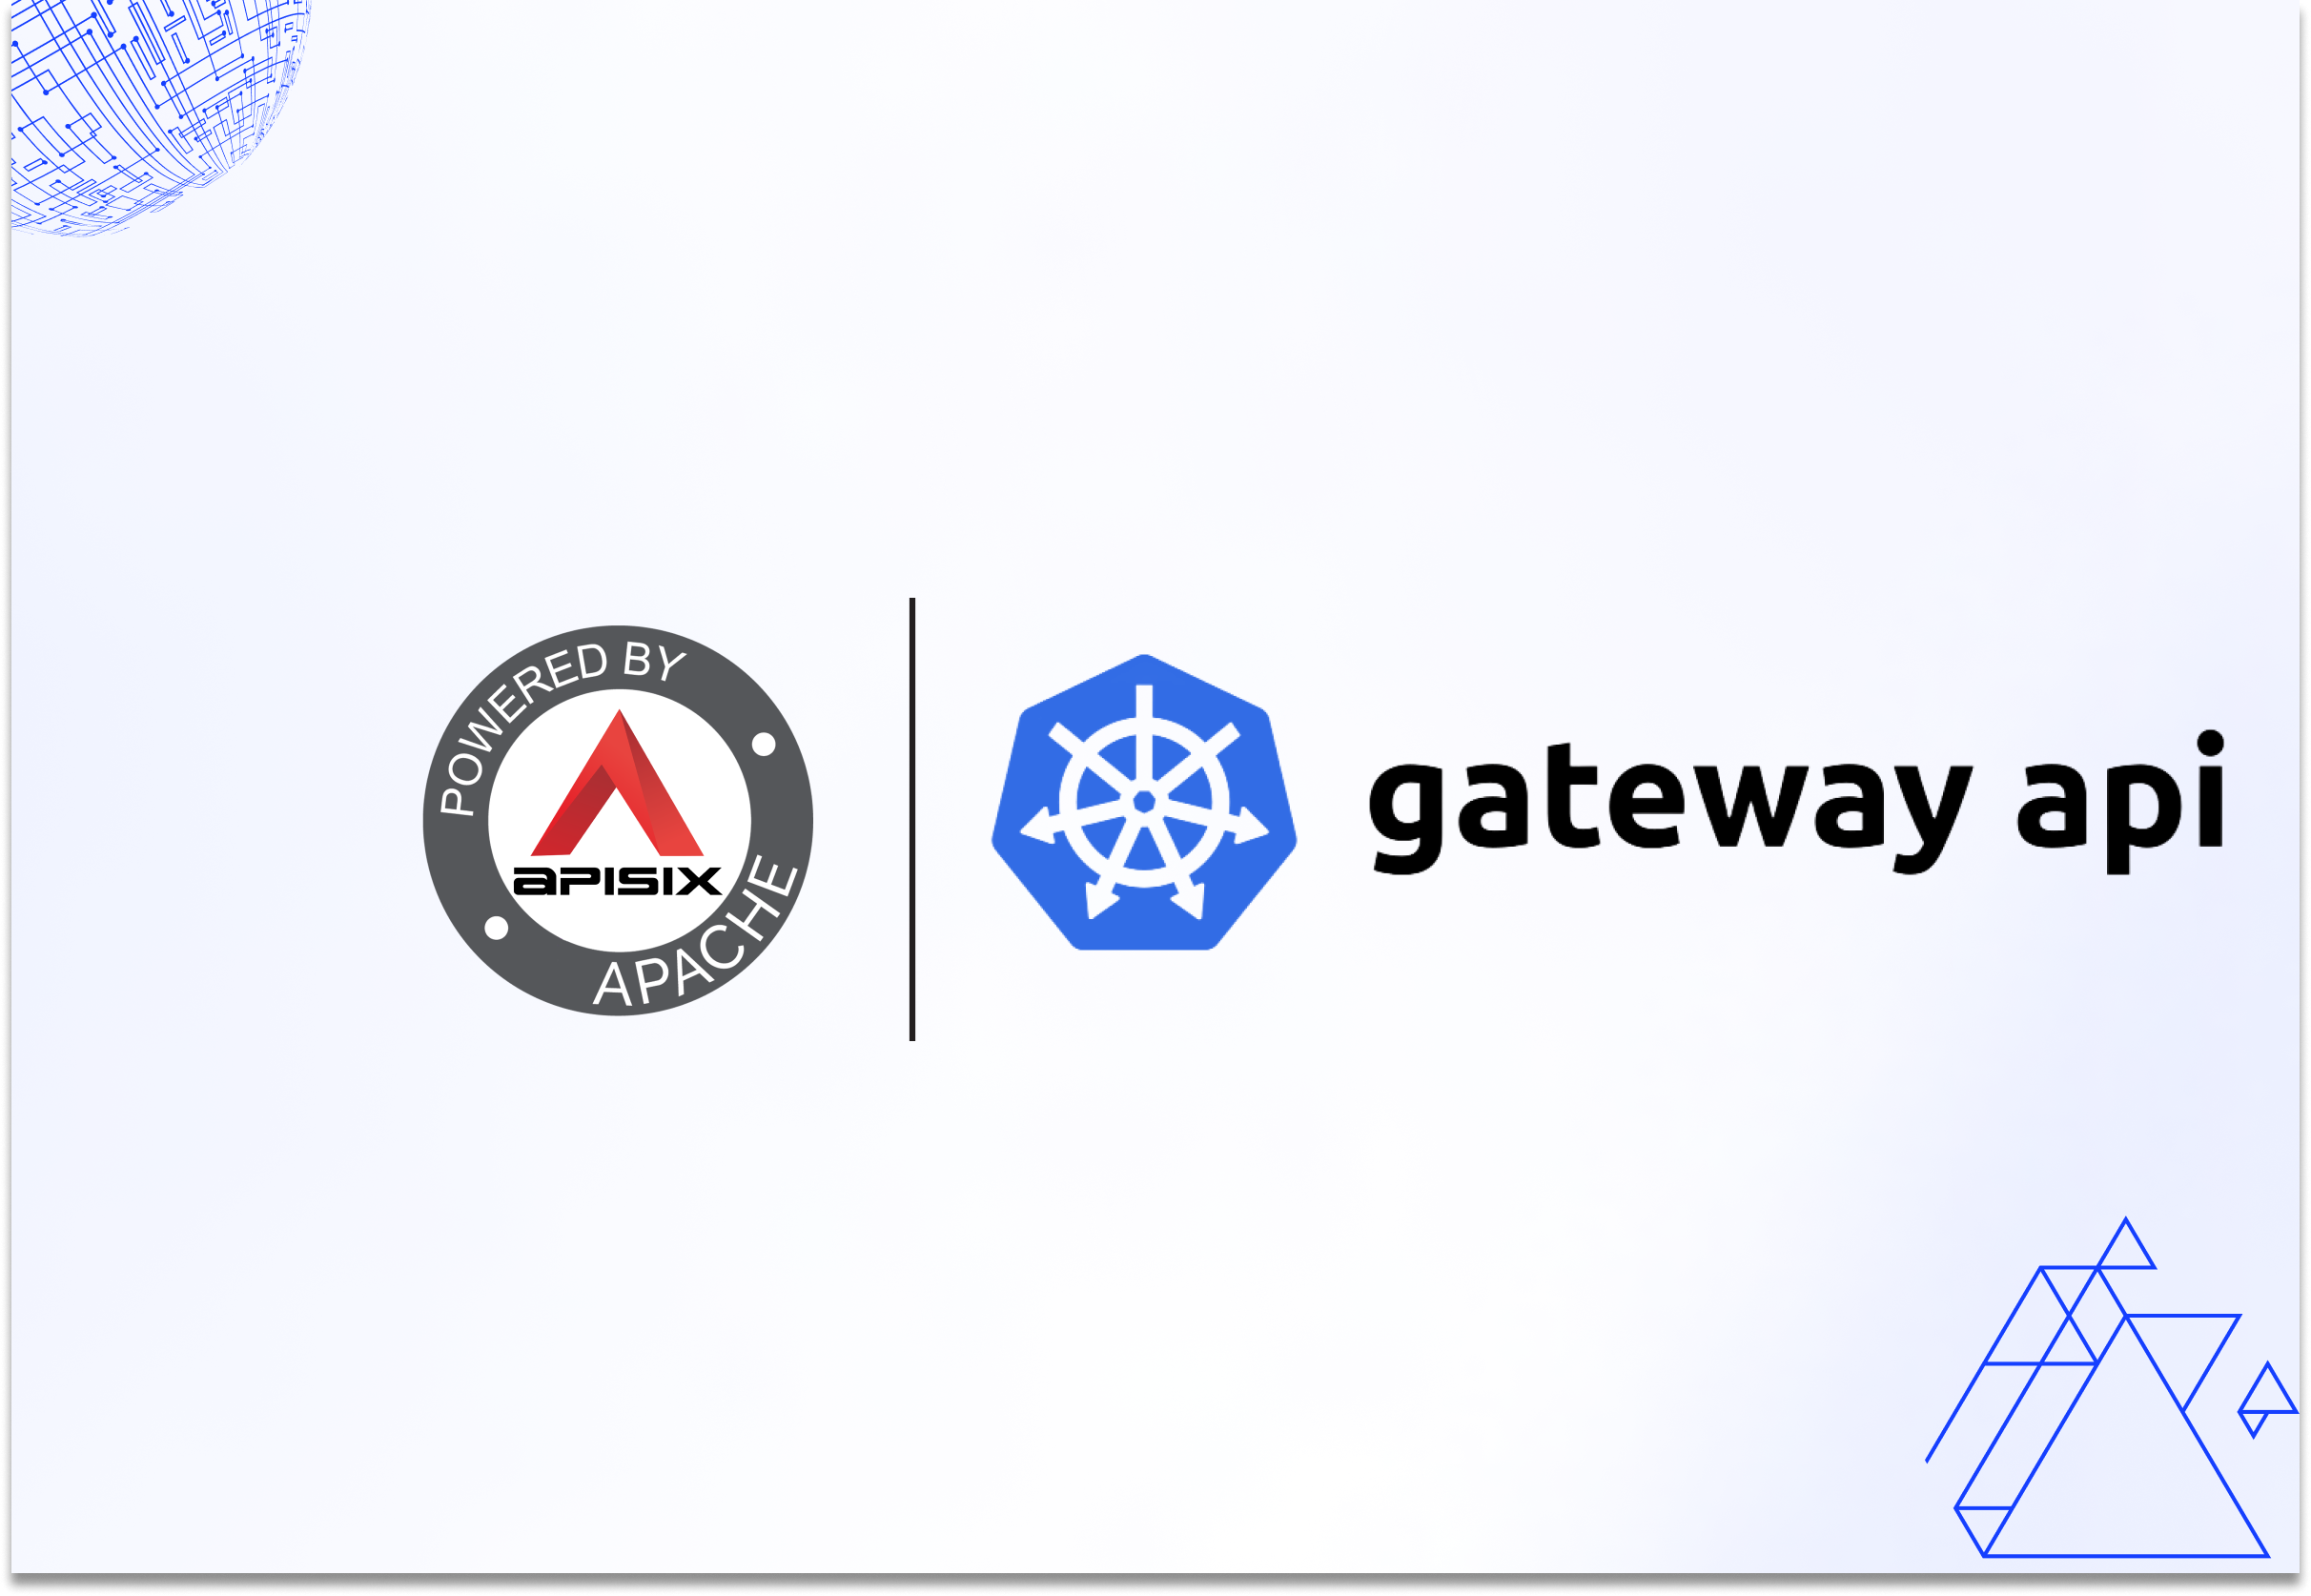 Kubernetes Gateway API v1.0: Should You Switch?